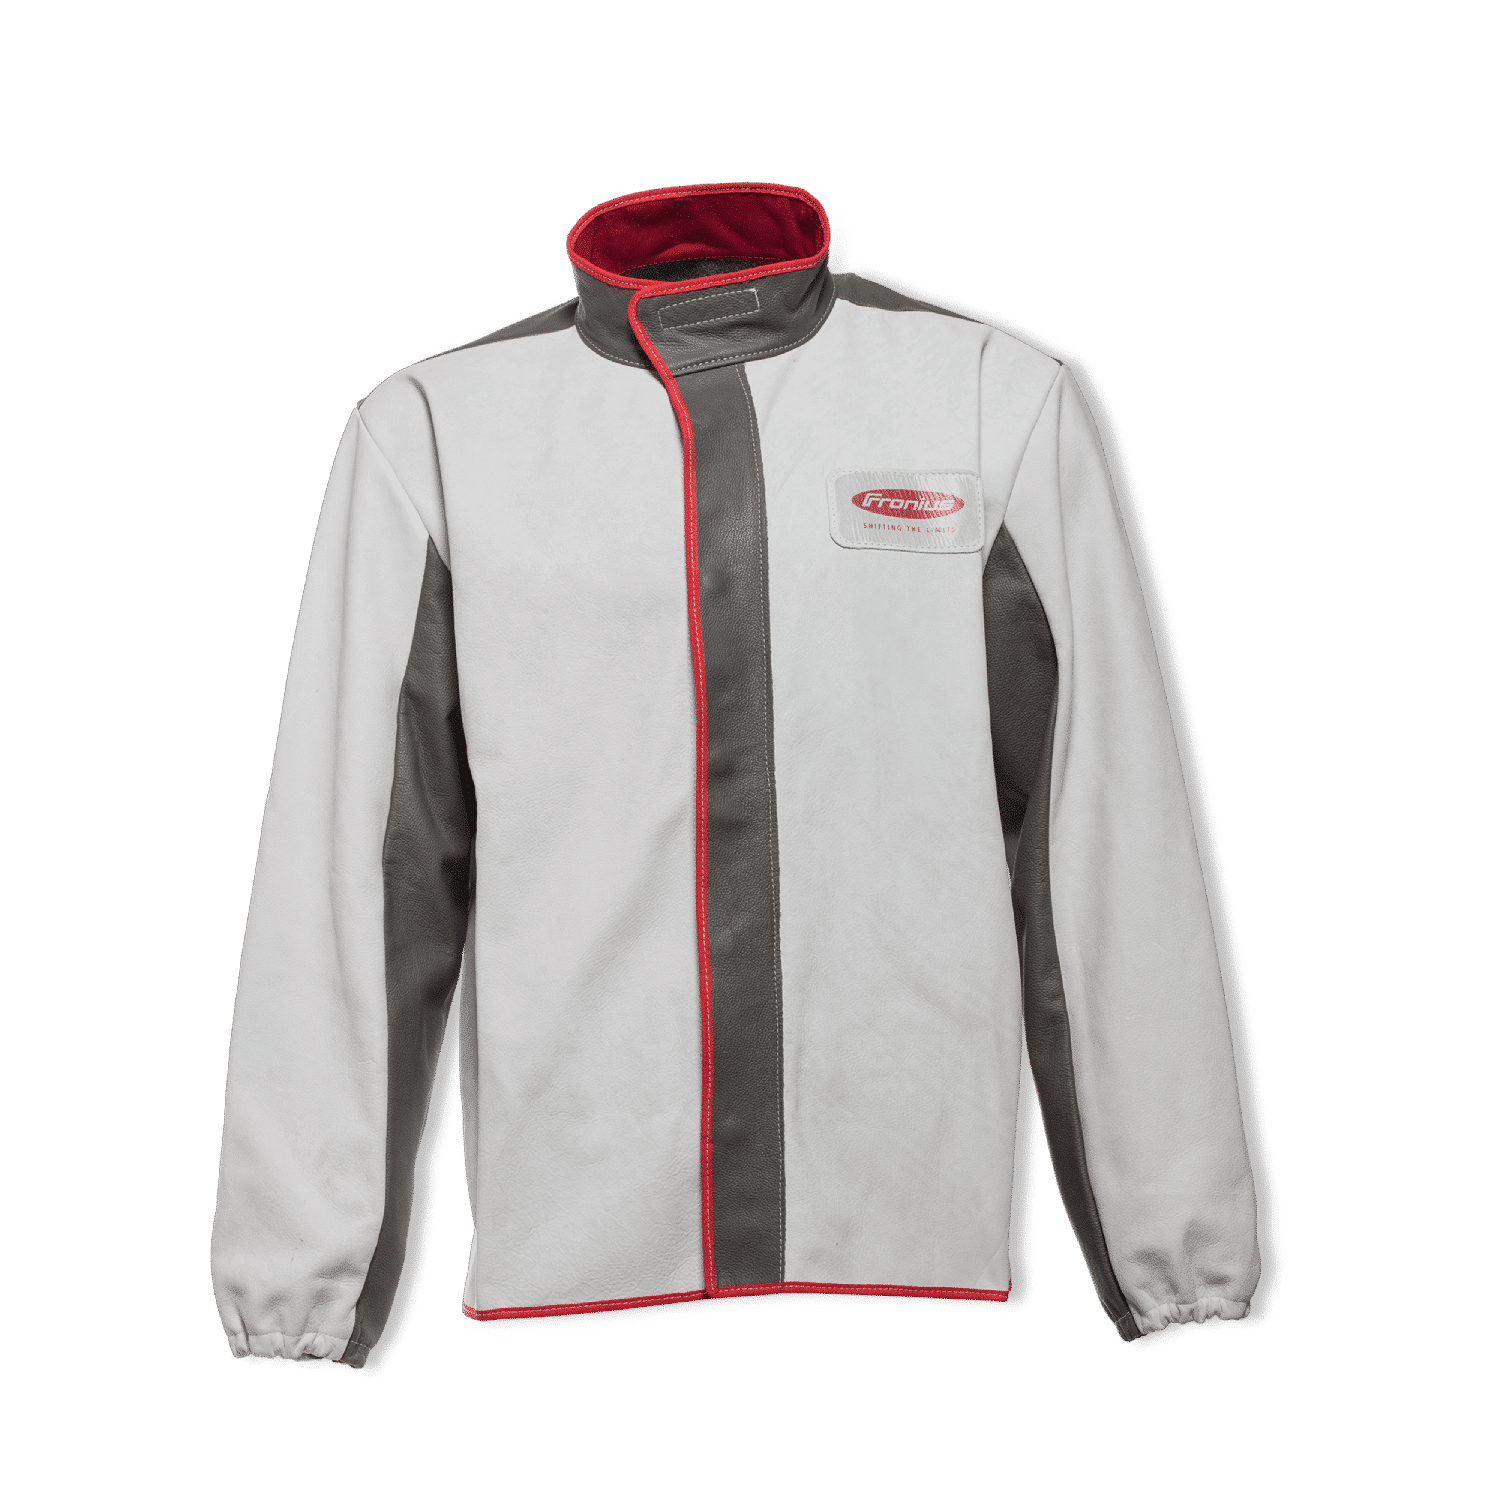 Fronius Basic läderjacka / Fronius Basic leather jacket